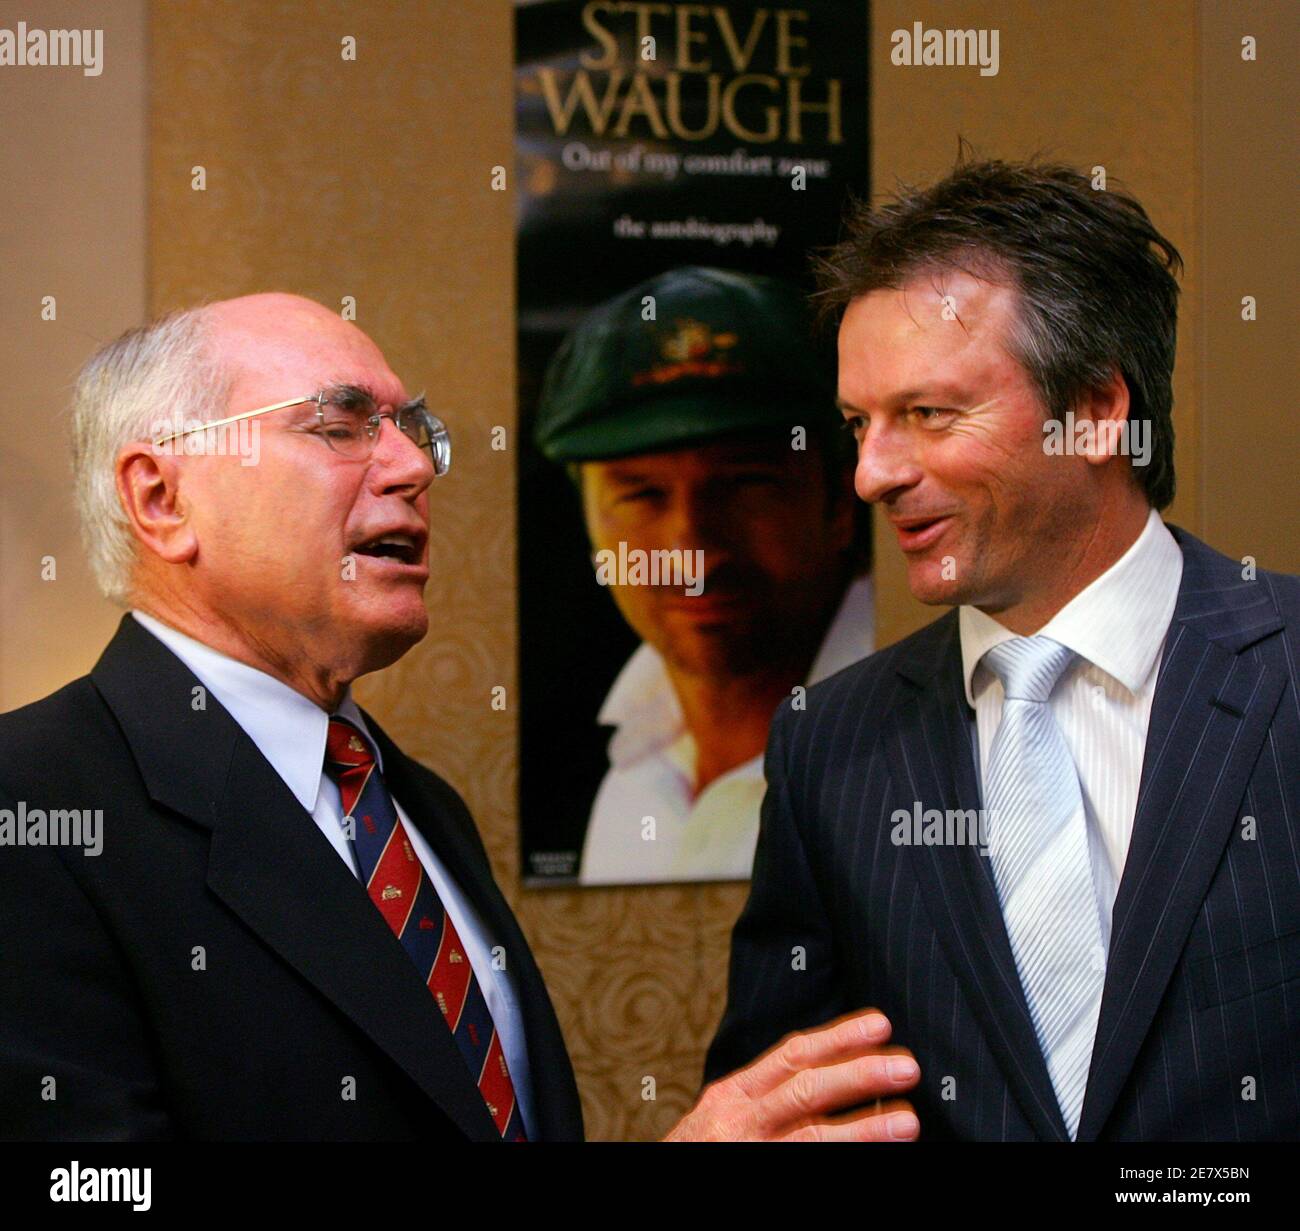 Le Premier ministre australien John Howard (L) s'adresse à l'ancien capitaine de l'équipe australienne de cricket Steve Waugh, avant que Howard ne lance officiellement l'autobiographie de Waugh à Sydney le 23 octobre 2005. Waugh, le capitaine australien du cricket Test de 1999 à 2004, a écrit le livre intitulé « Out of My Comfort zone », dans lequel il révèle des informations sur la vie sur le terrain et en dehors pendant qu'il dirigeait une équipe dominante. REUTERS/will Burgess Banque D'Images